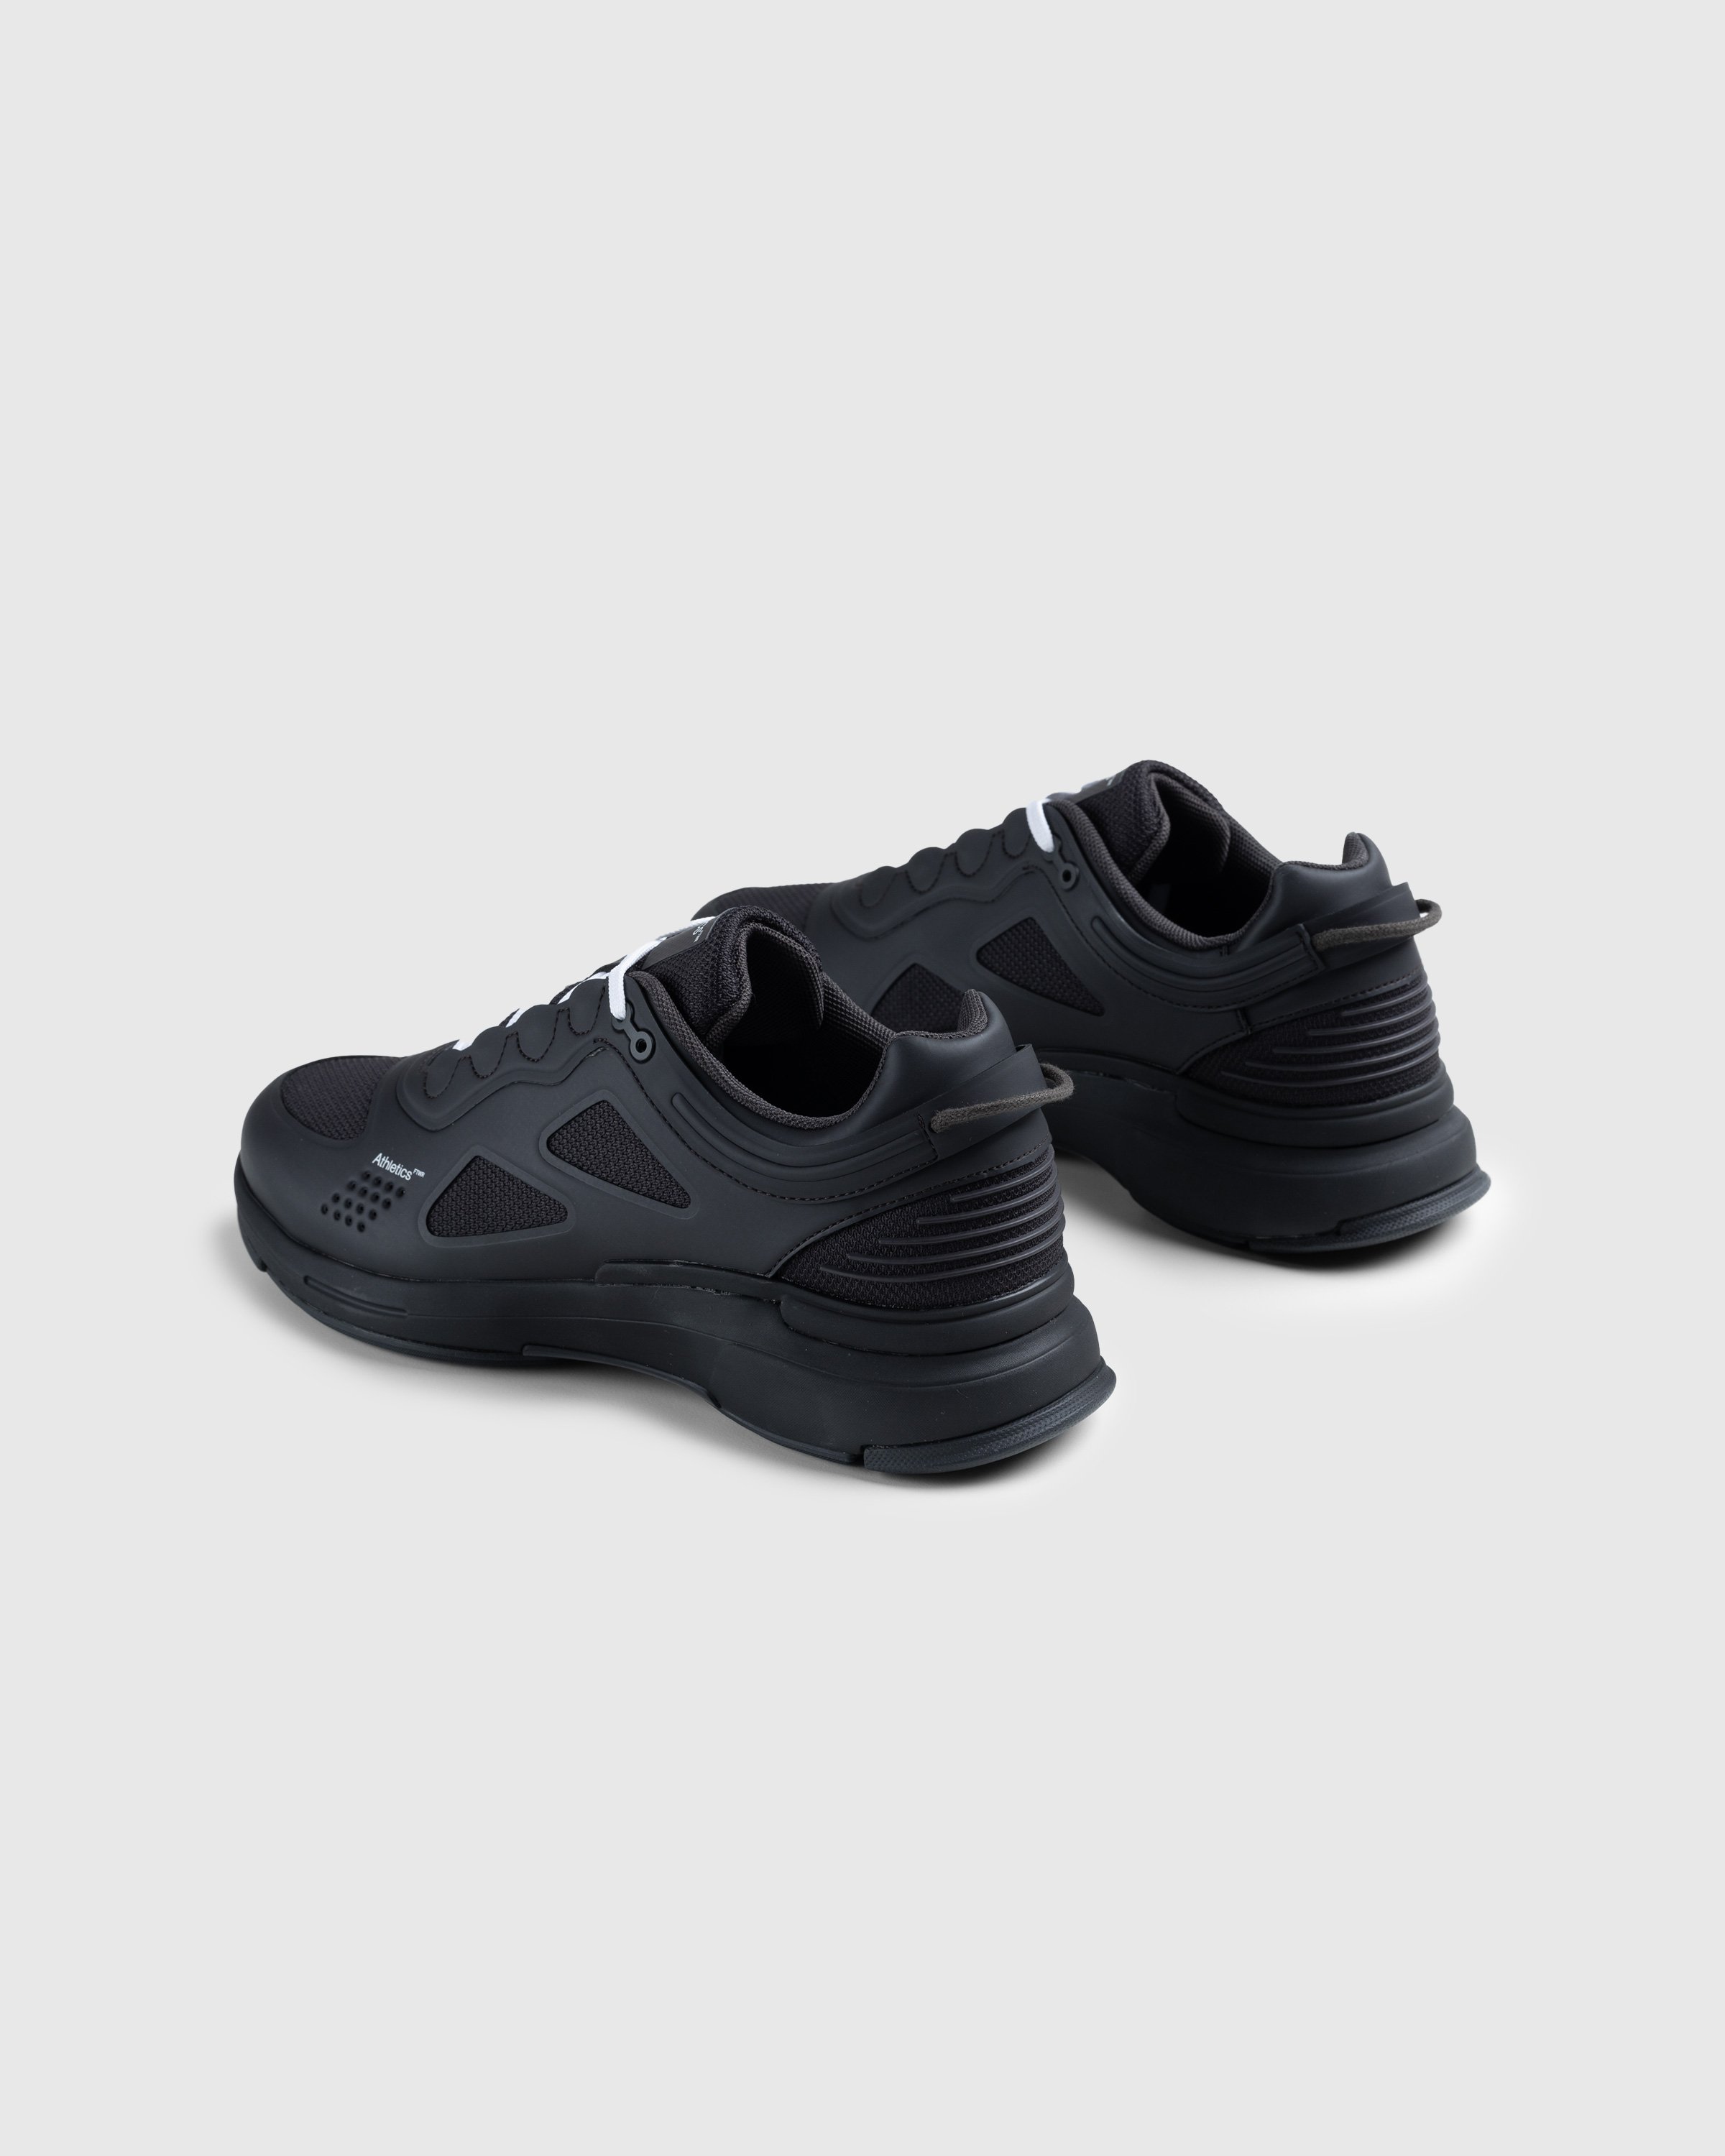 Athletics Footwear - One.2 Black - Footwear - Black - Image 4